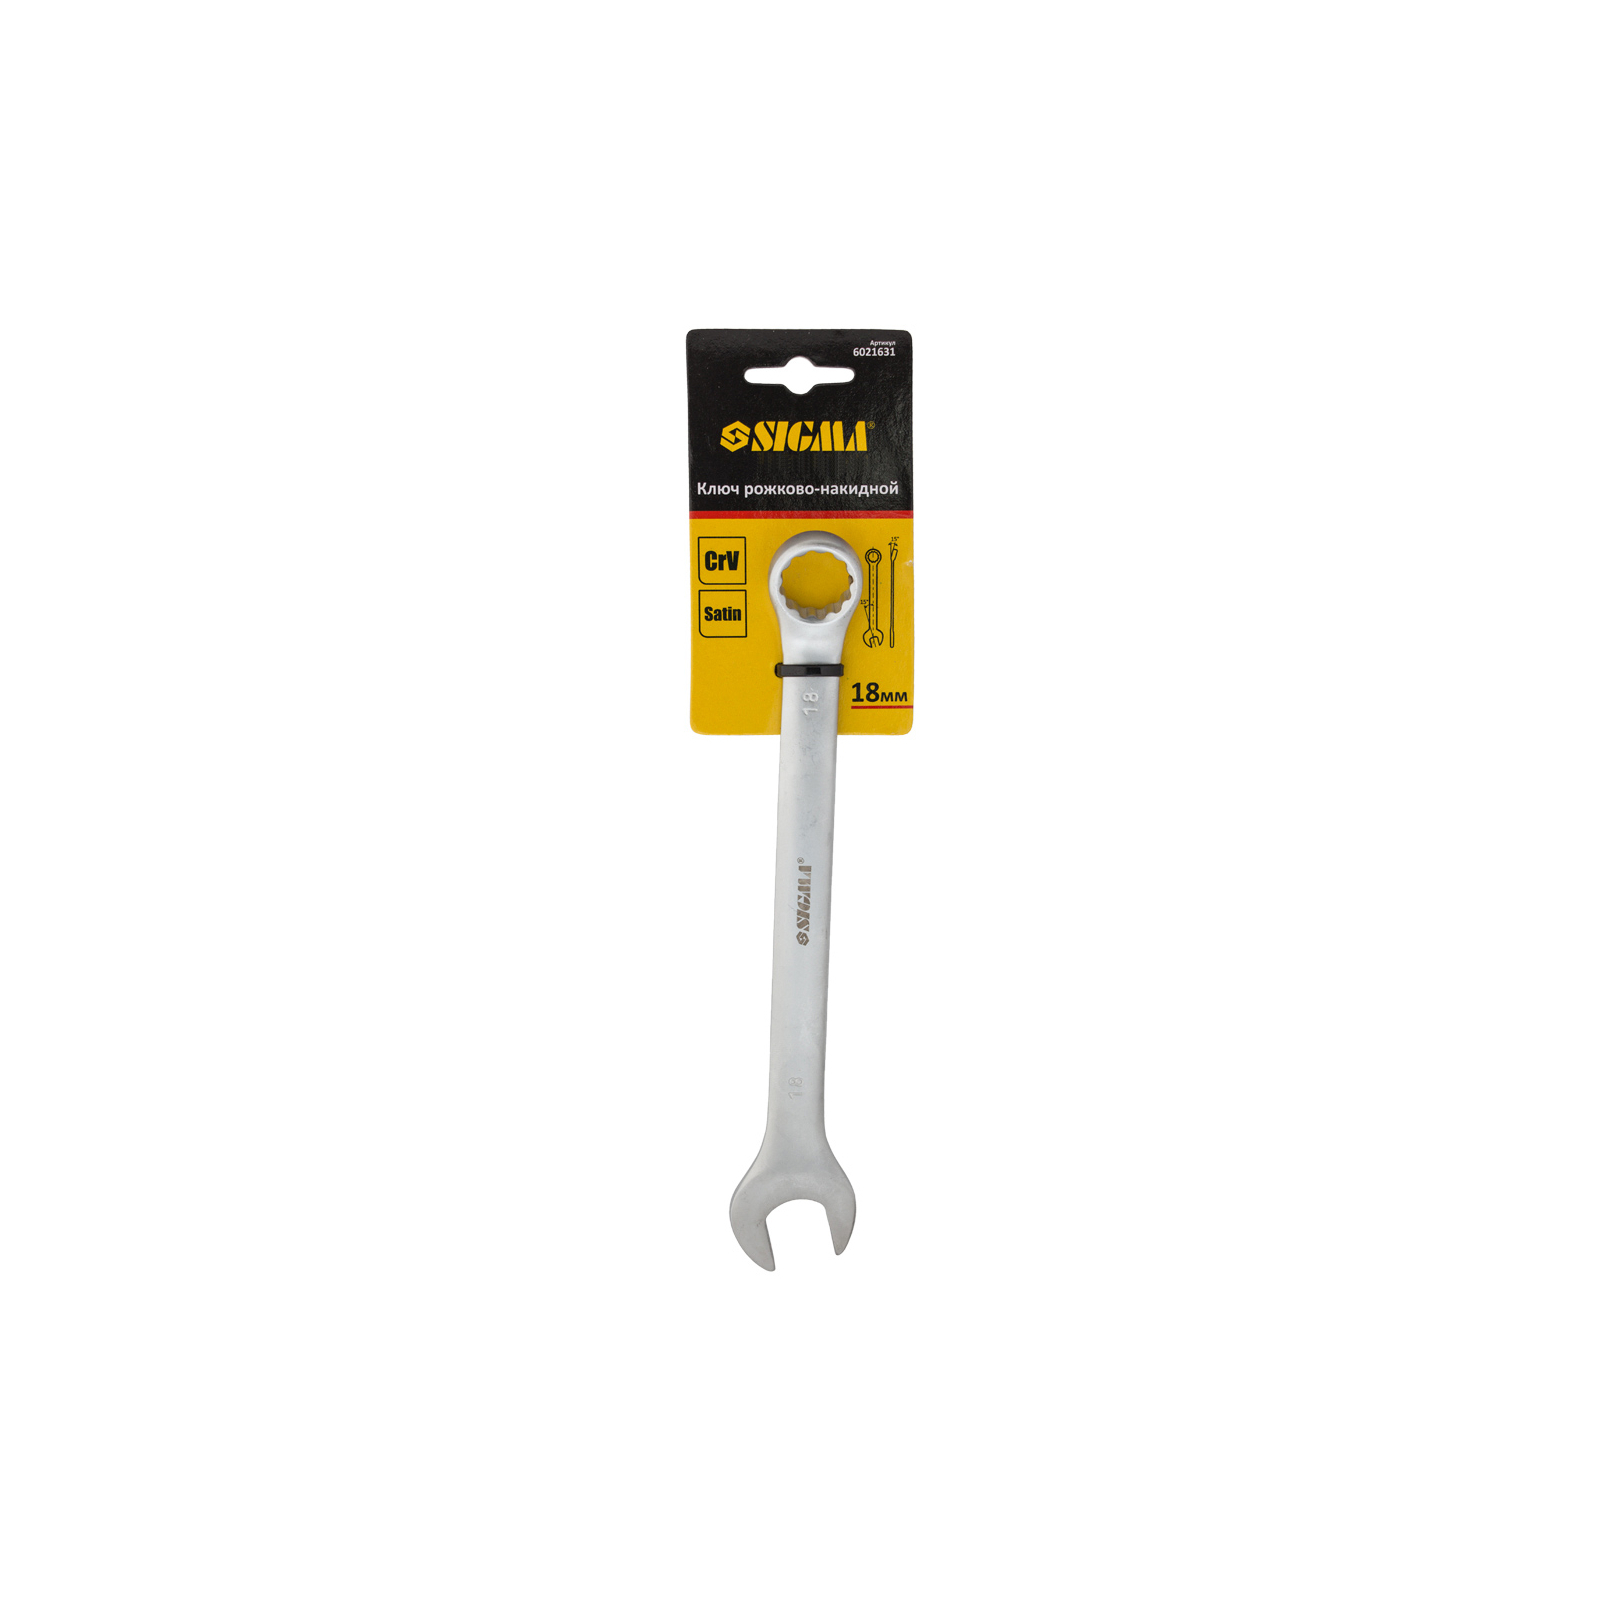 Ключ Sigma рожково-накидной 24мм CrV satine с подвесом (6021691) изображение 3